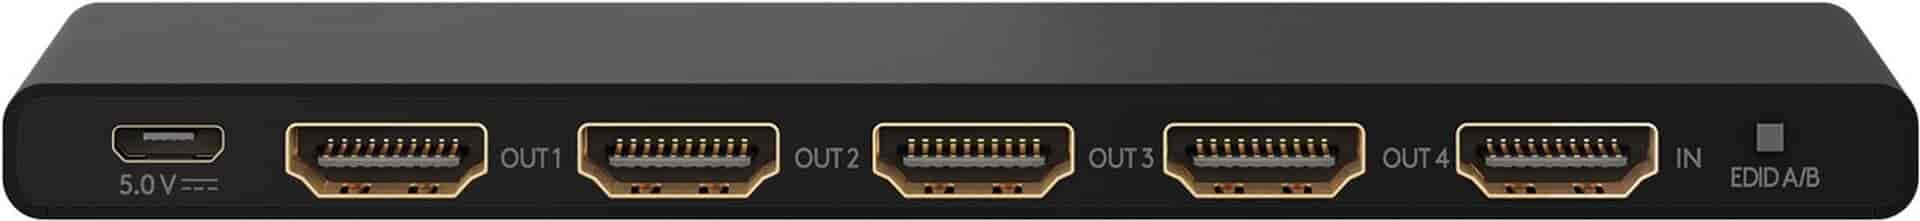 HDMI Splitter 1 til 4. Del nemt HDMI signal til flere skærme, 4K UHD @ 60 Hz